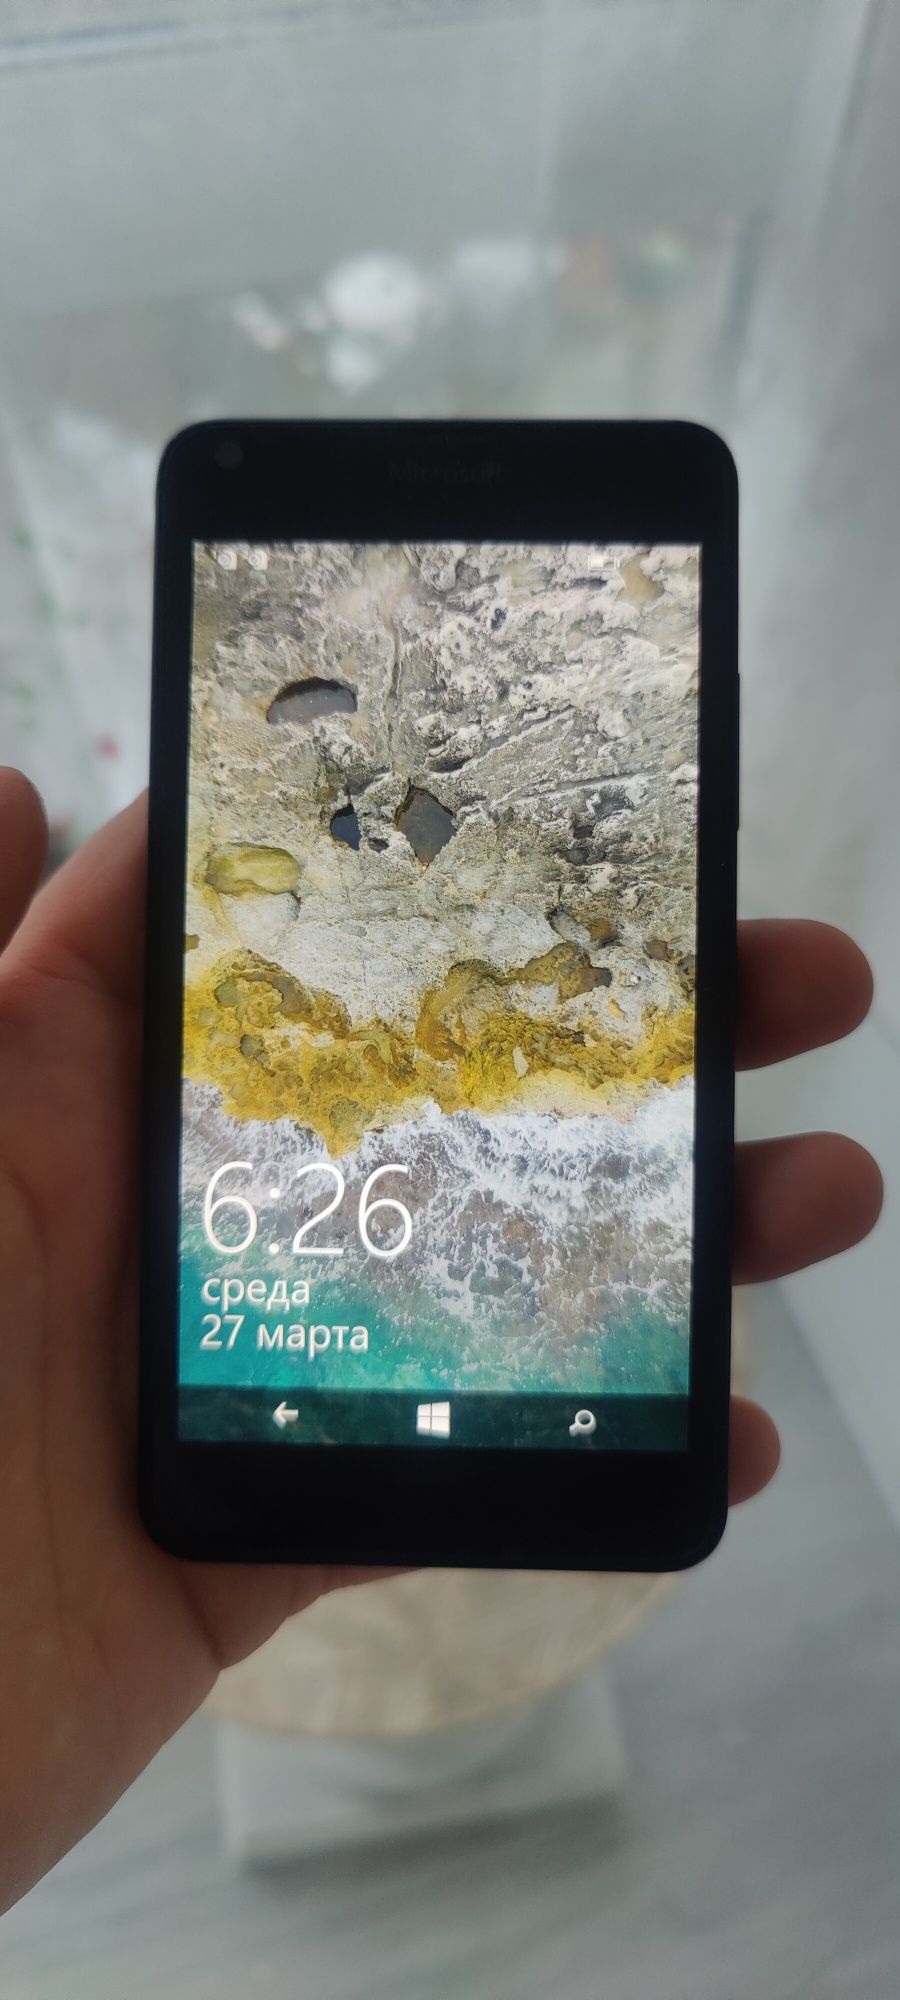 Цена 400грн
Звонилка 
Nokia lumia 640 на две сим!Город Николаев или Ол